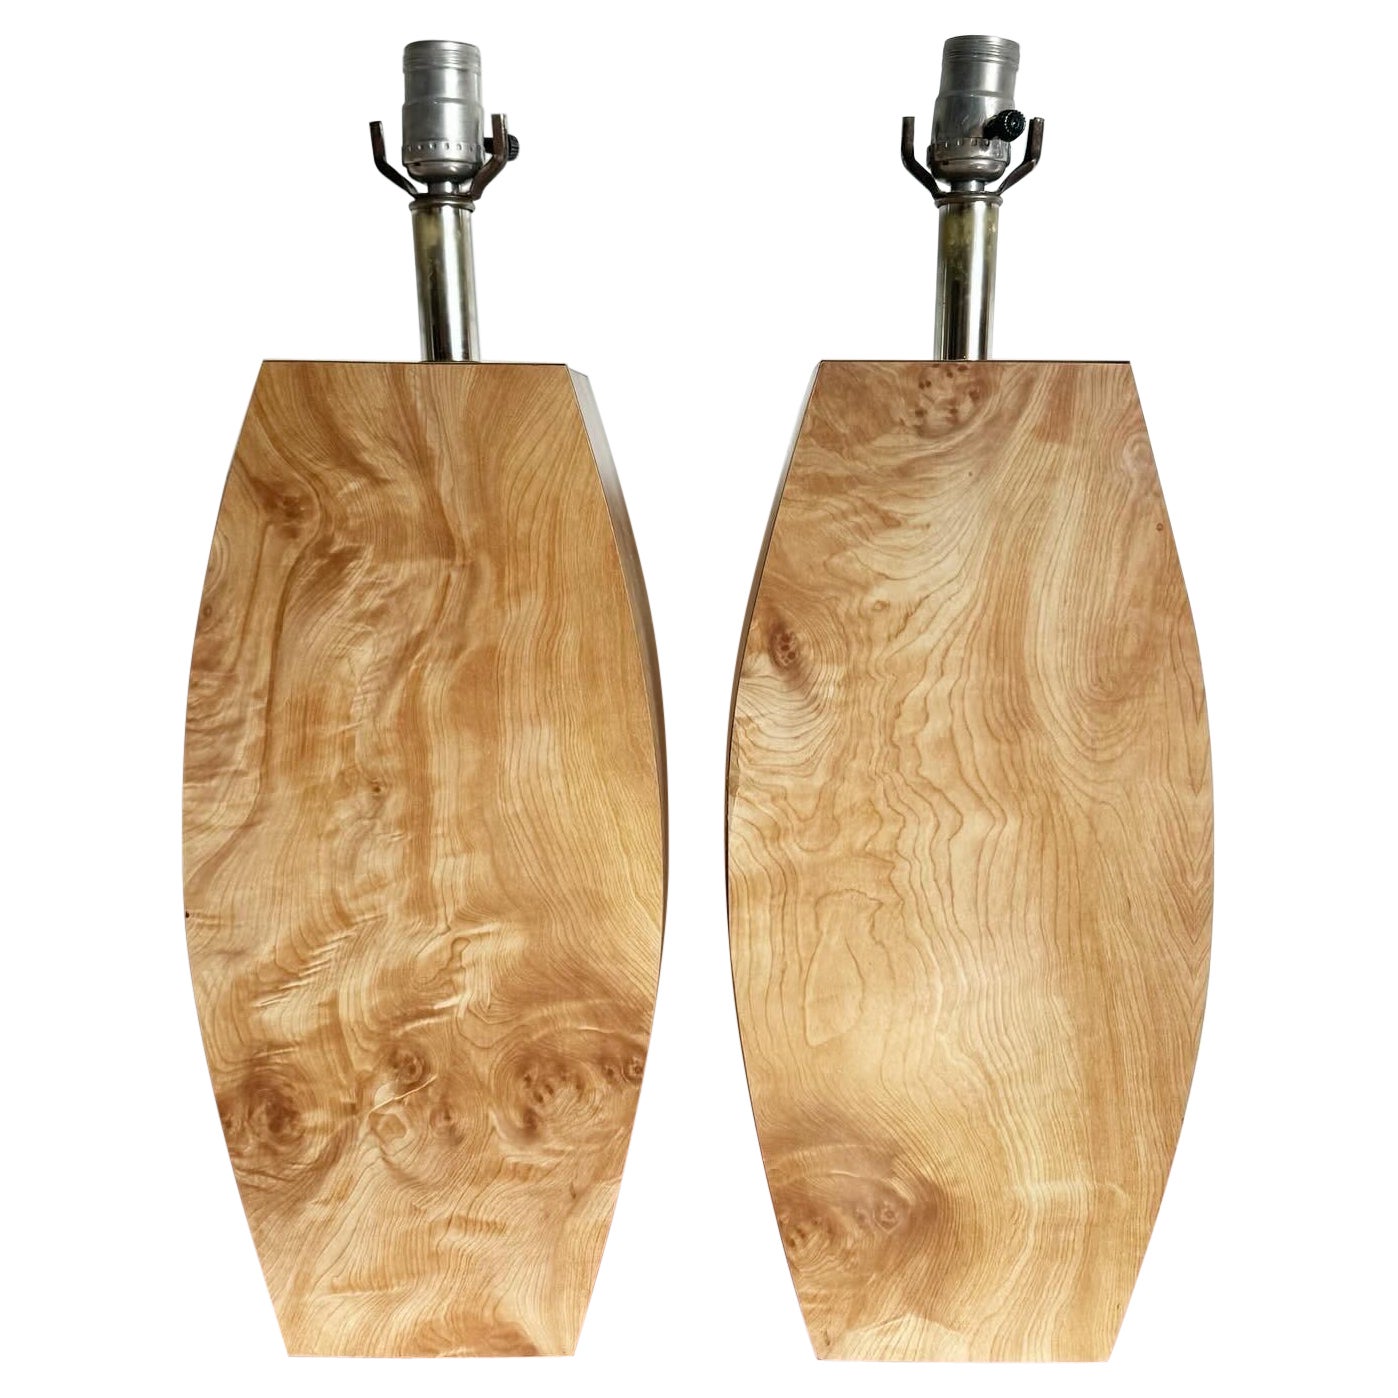 Postmodern Burl Wood Laminate Table Lamps - a Pair